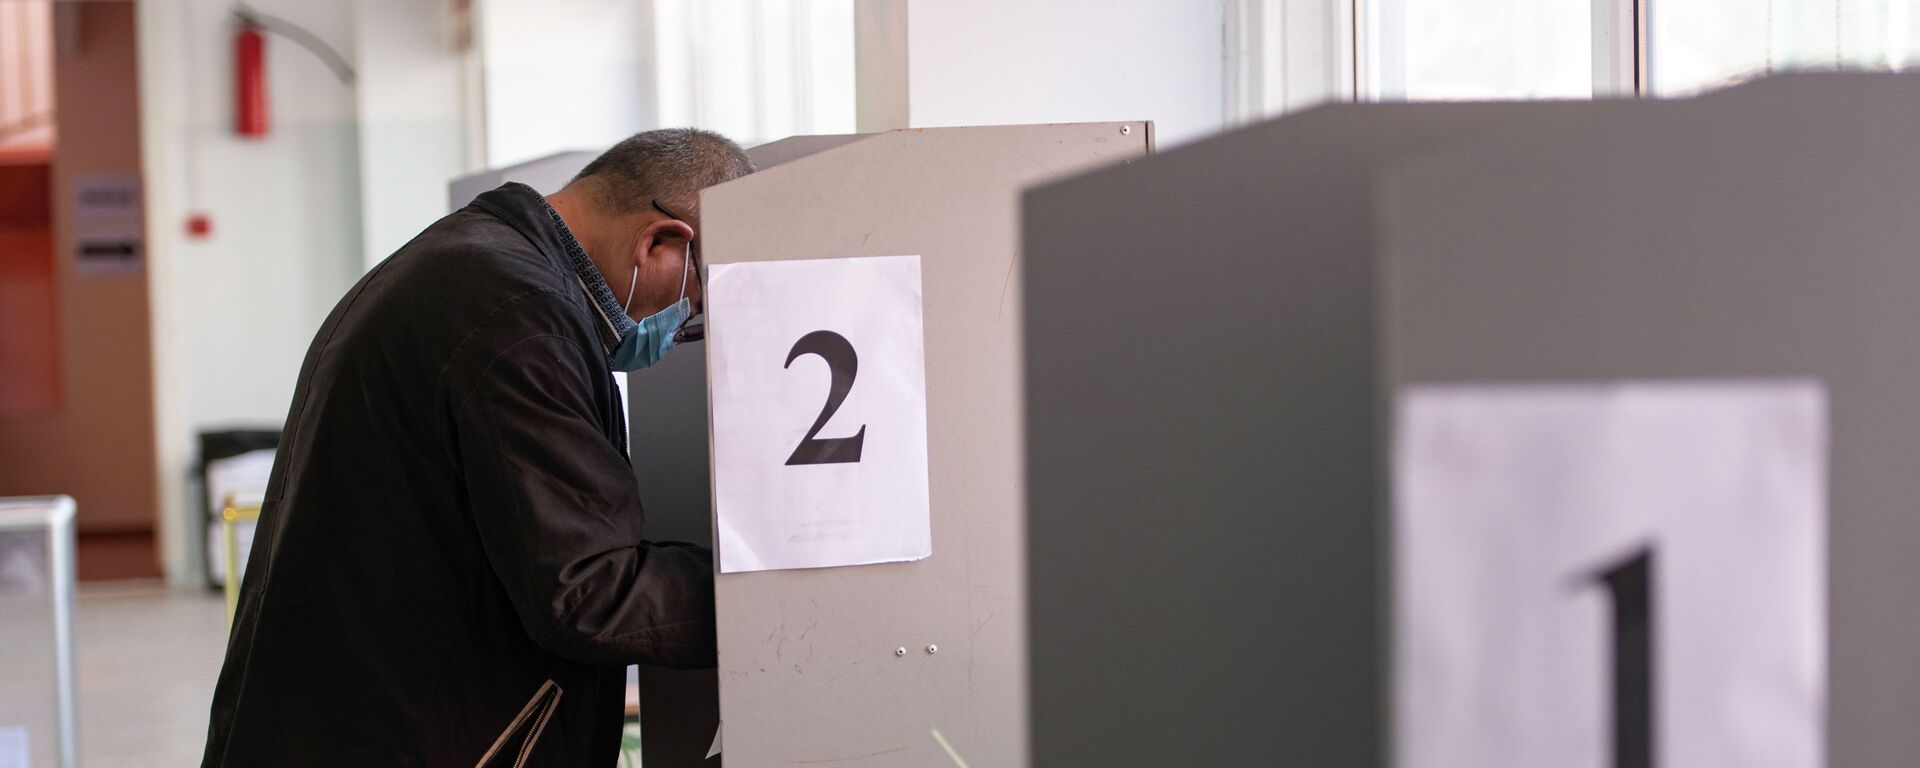 Мужчина голосует на избирательном участке в Бишкеке. Архивное фото - Sputnik Кыргызстан, 1920, 04.06.2021